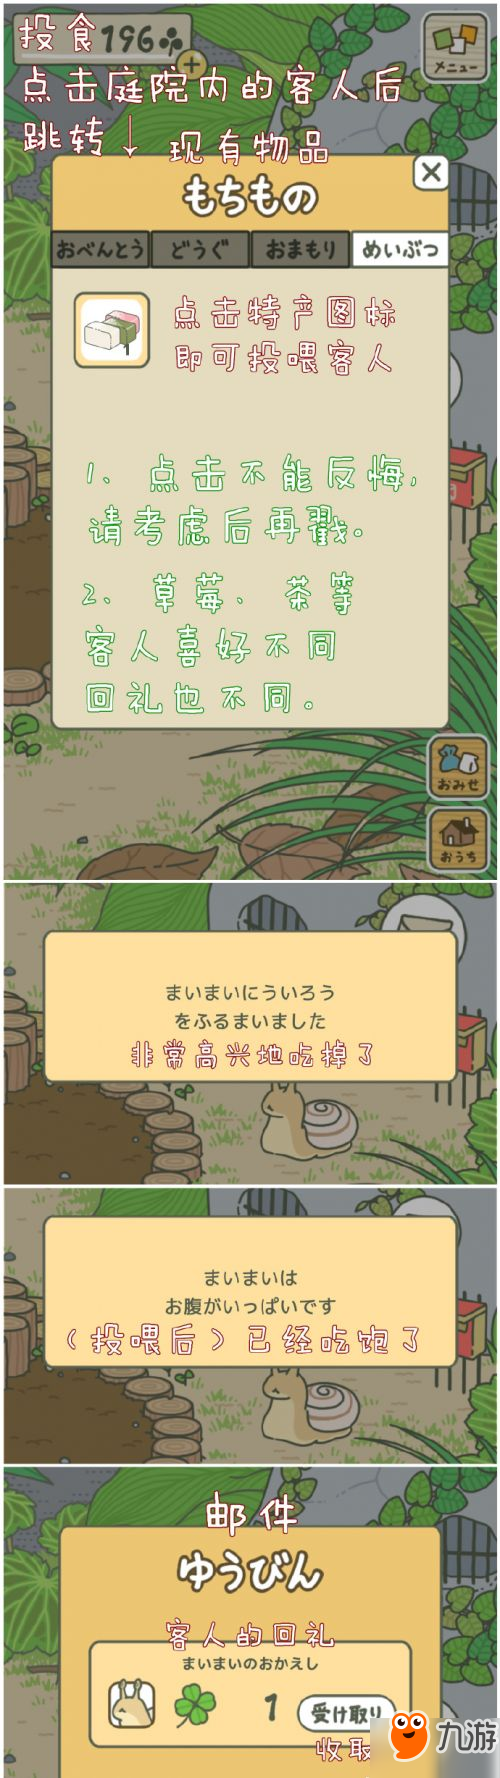 旅行青蛙怎么玩 养青蛙游戏中文汉化下载